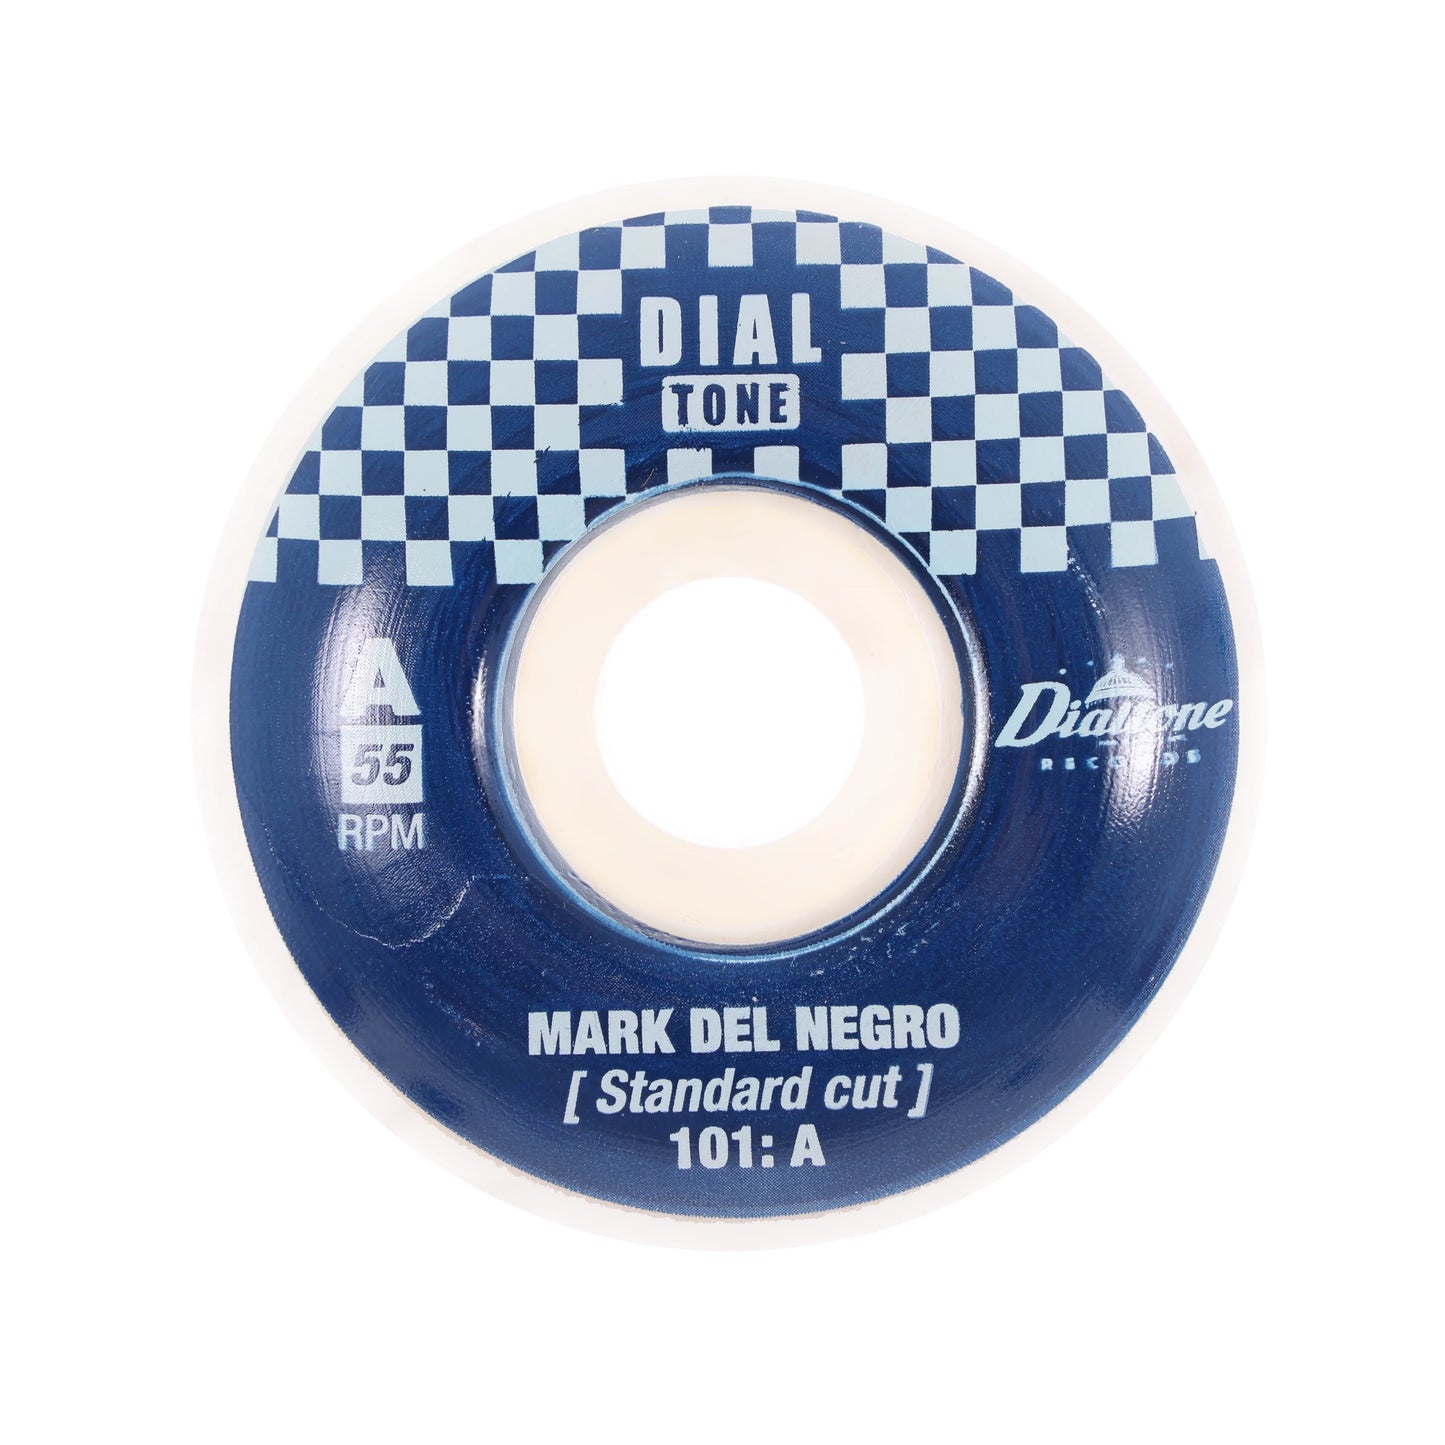 Dial Tone Del Negro Capitol Standard 101a 55mm Wheels